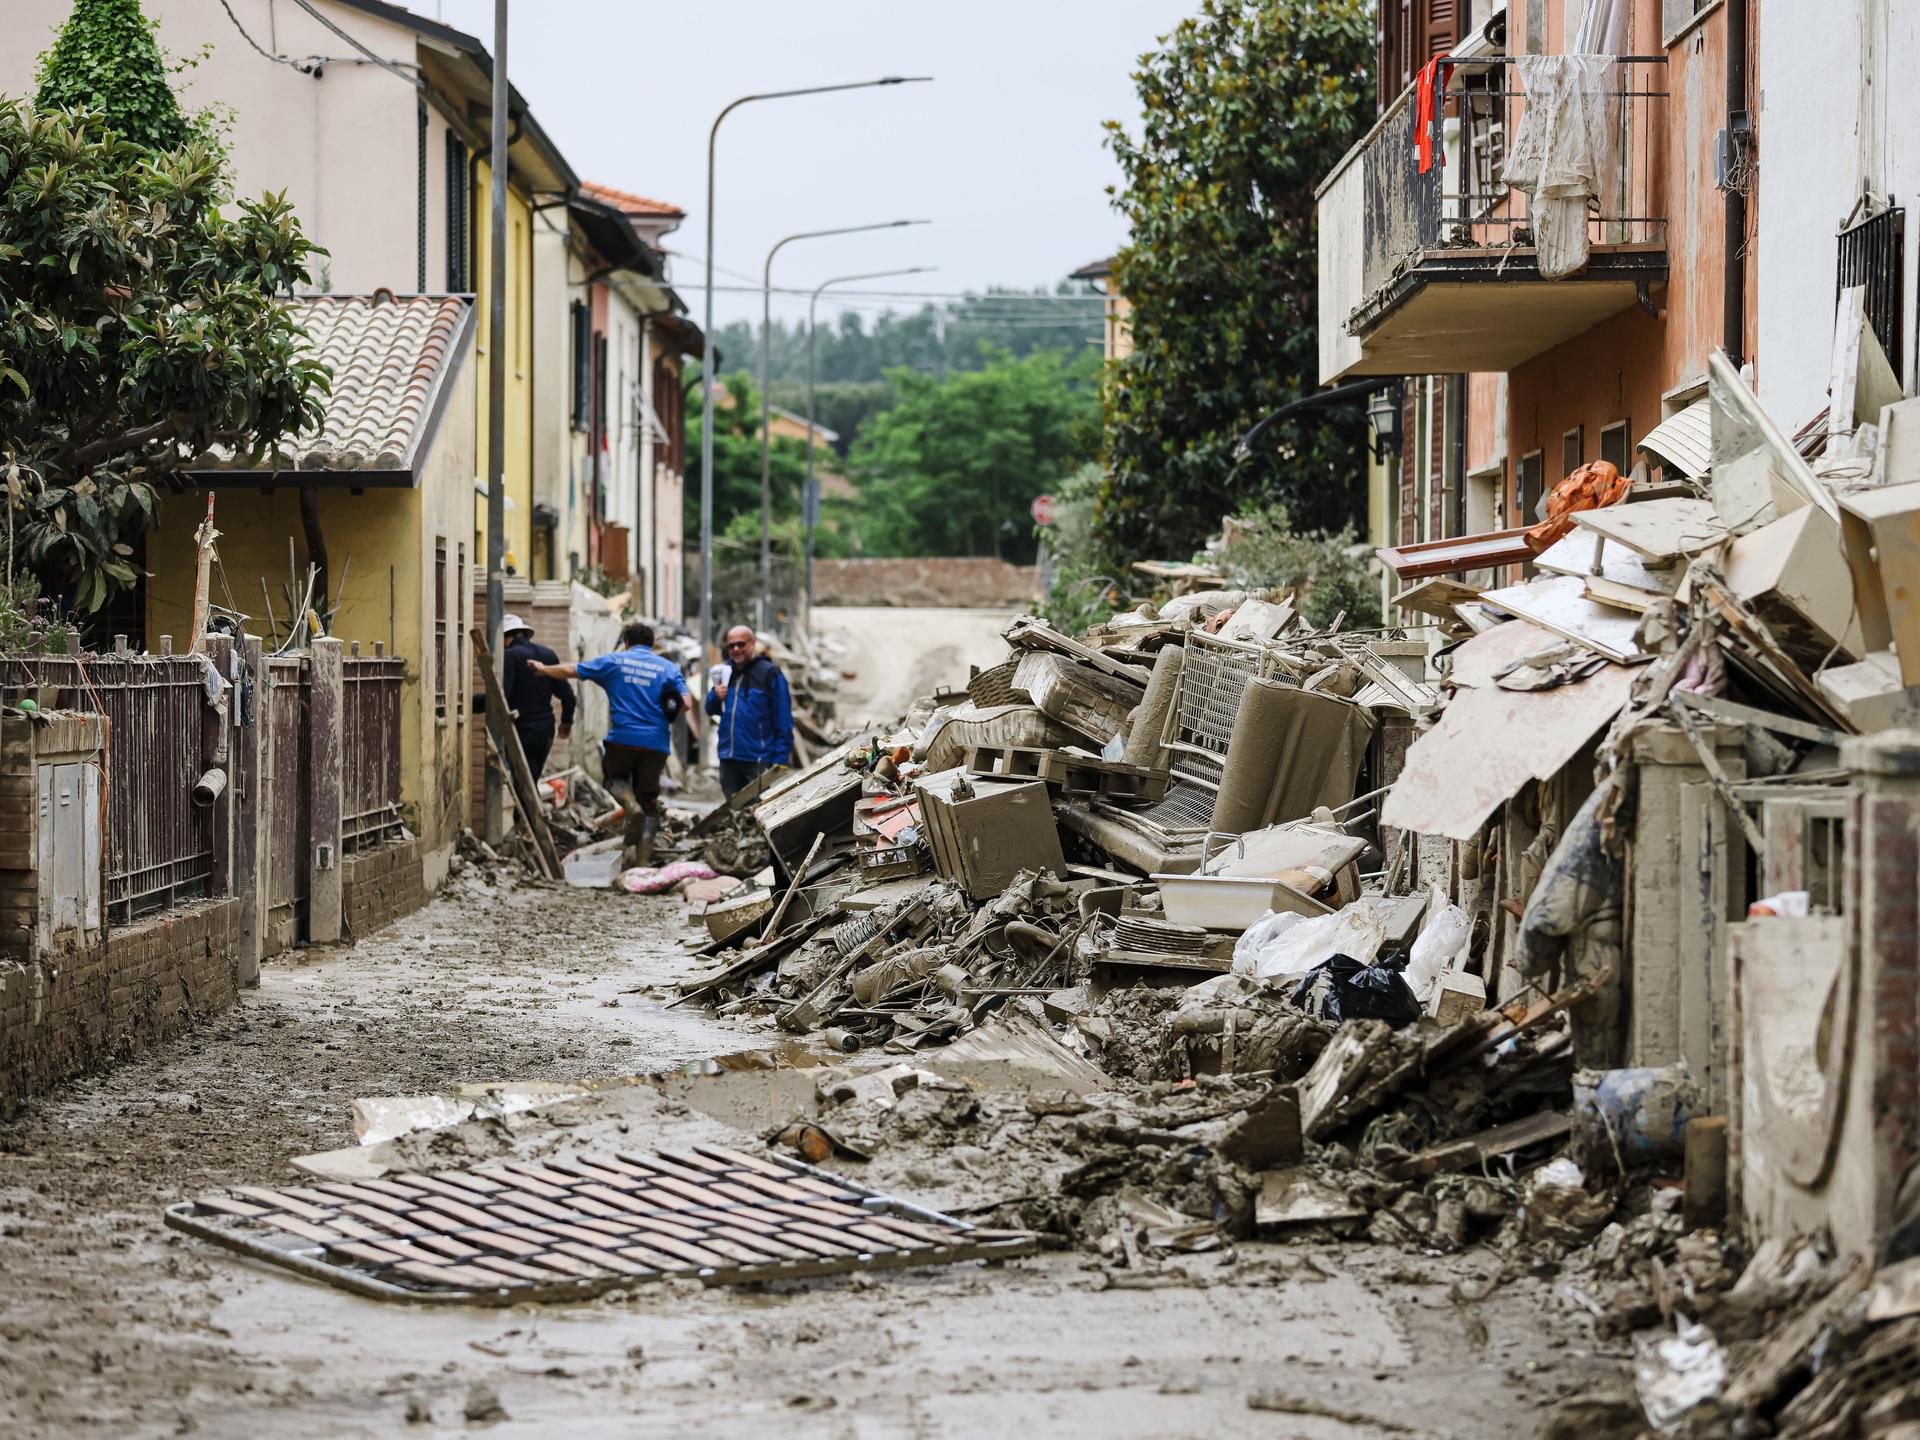 Schlammige Gegenstände türmen sich in einer Straße: Flutschäden in der norditalienischen Stadt Faenza.